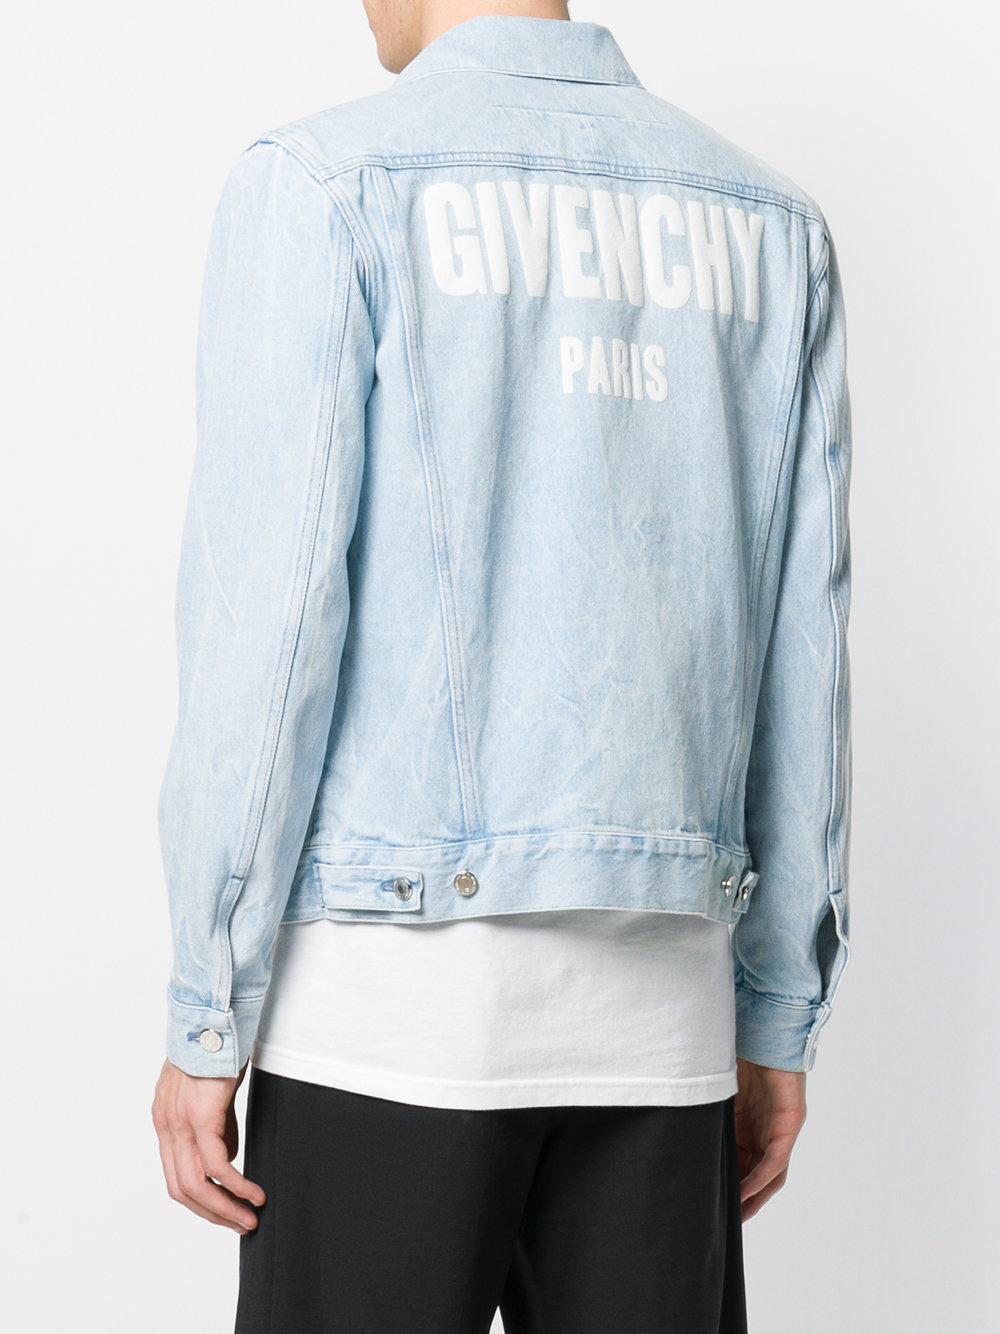 Givenchy Logo Print Denim Jacket in Blue for Men - Lyst